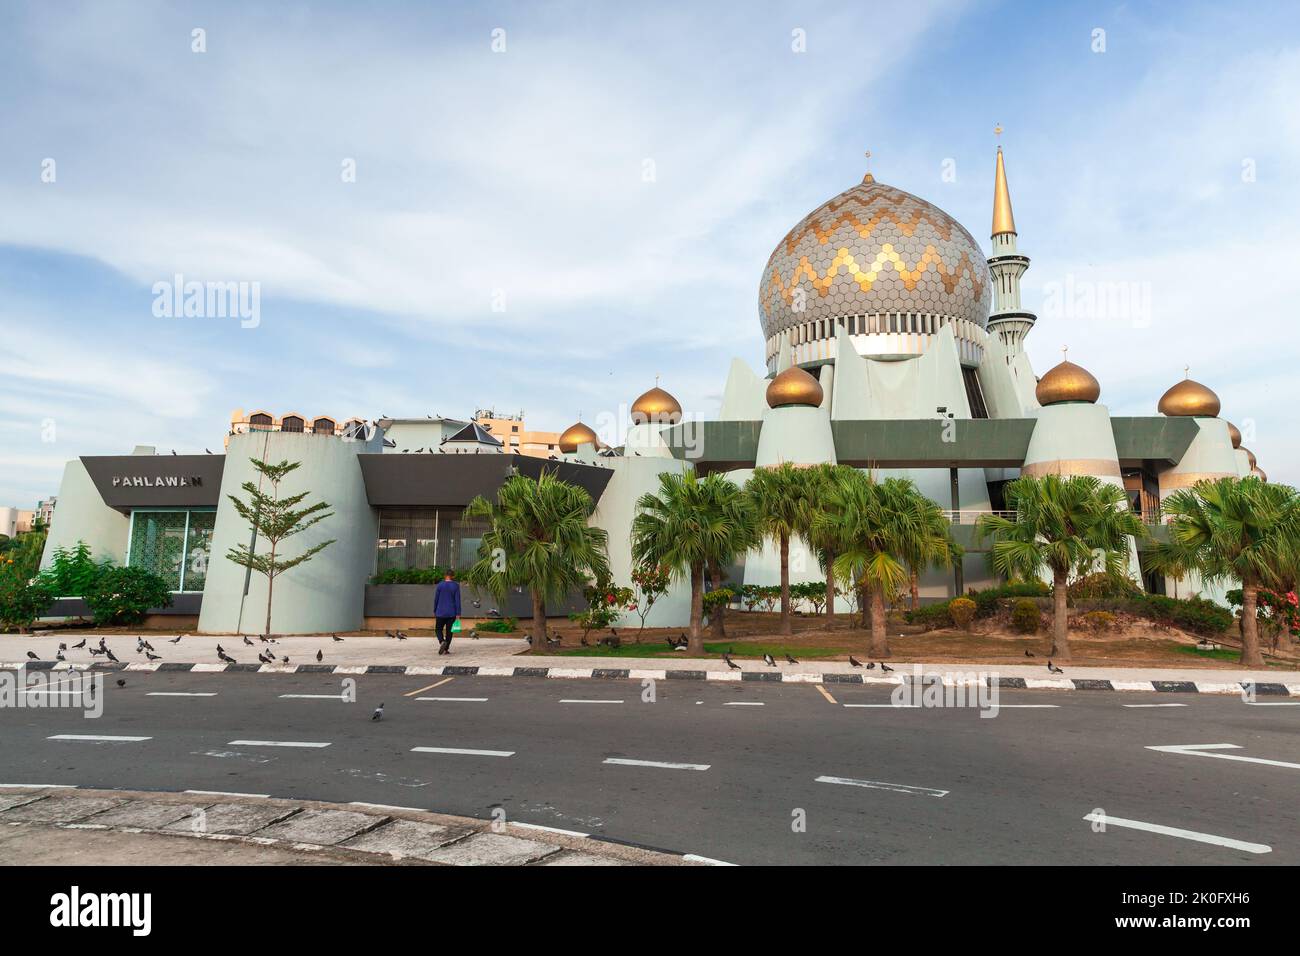 Kota Kinabalu; Malaysia - March 17; 2019: A boy walks to Sabah State Mosque or Masjid Negeri Sabah Stock Photo